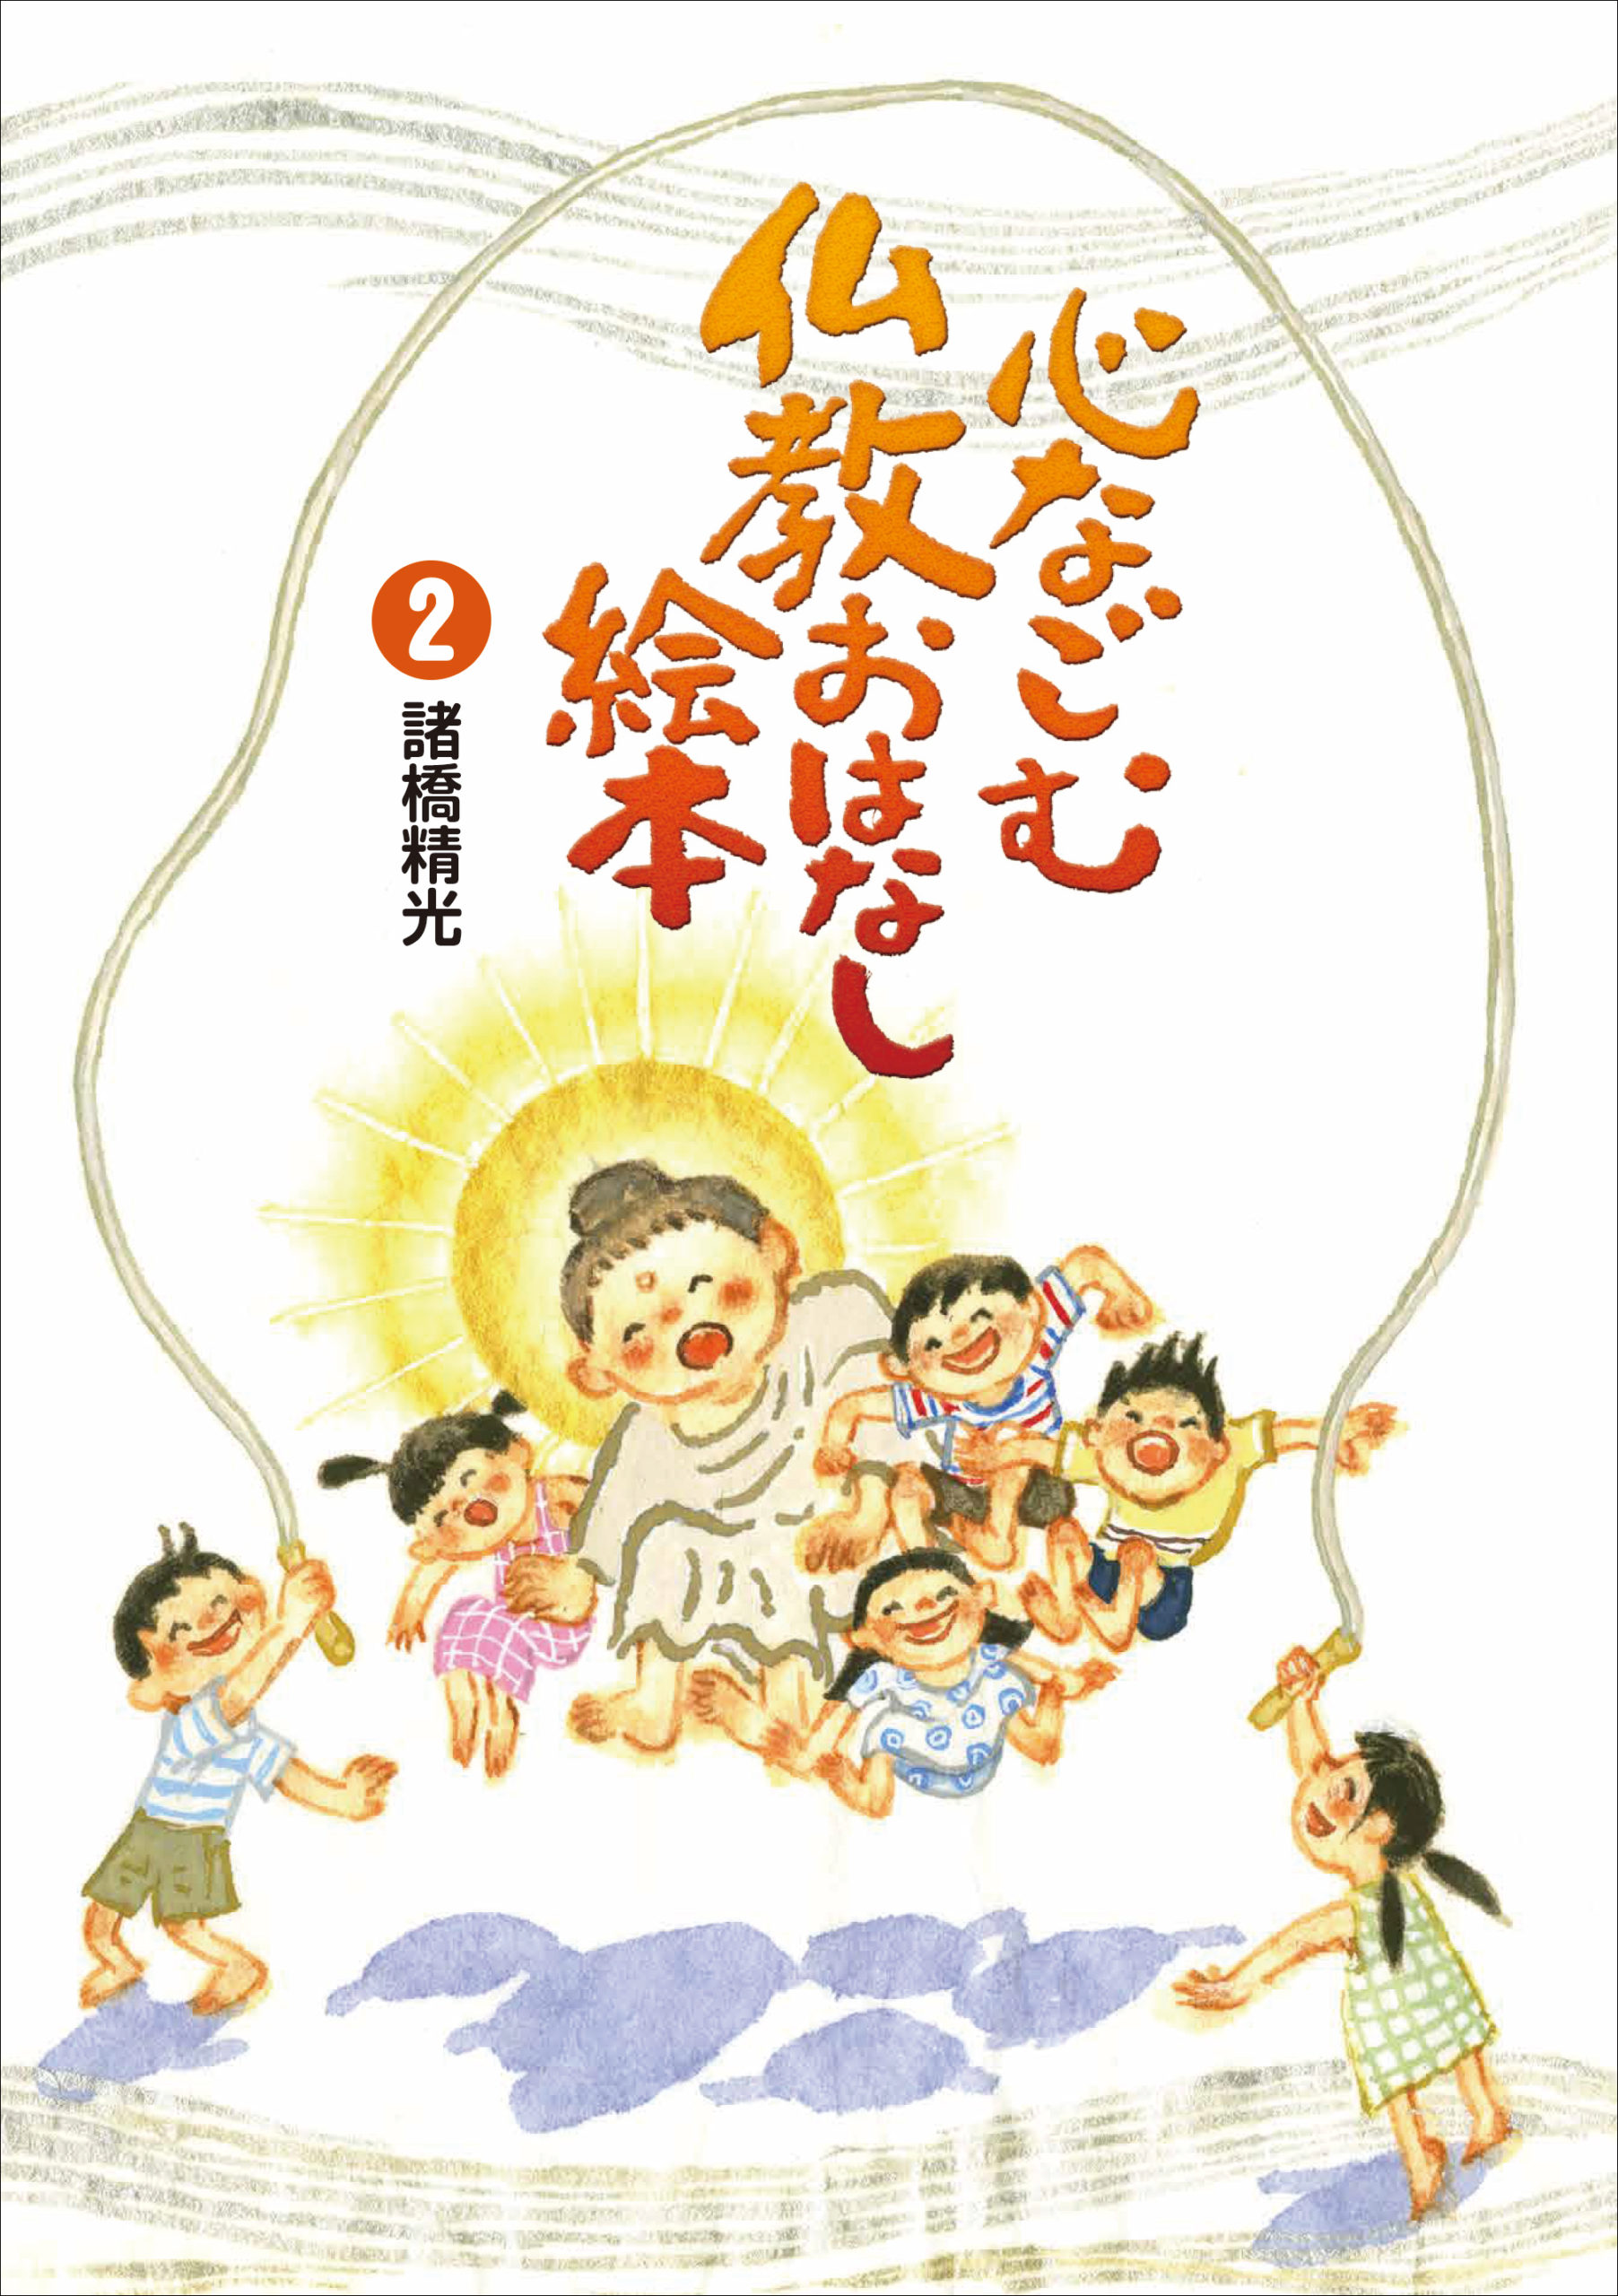 仏教書籍・仏教教化用品 | 鈴木出版株式会社